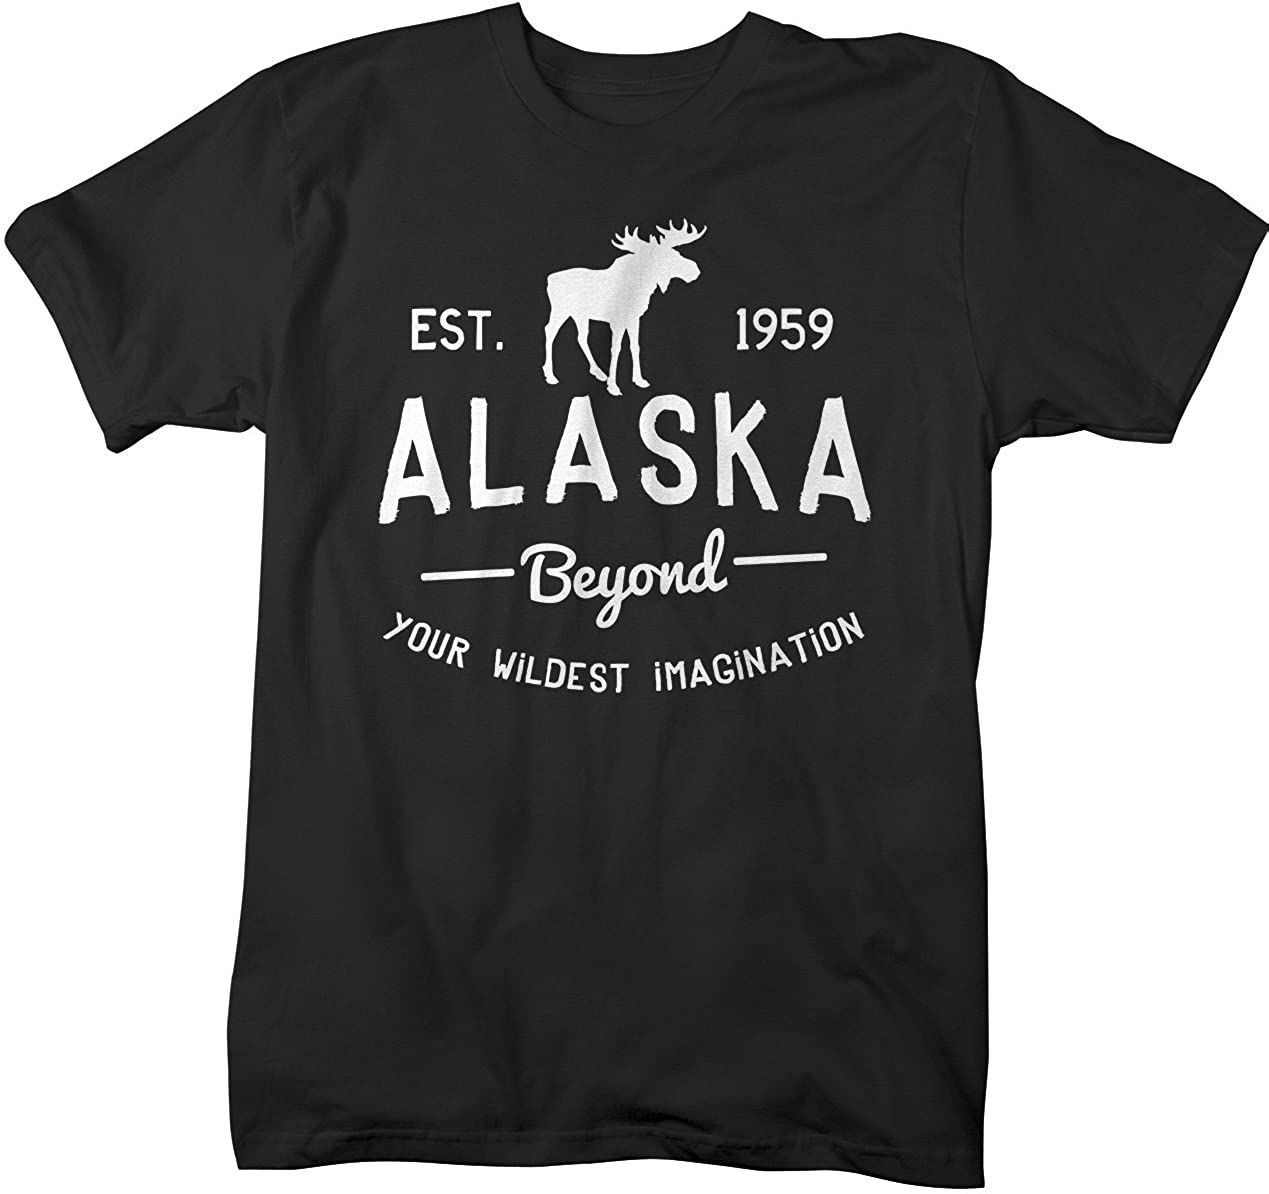 Men s Alaska State T-Shirt Beyond Your Imagination Moose Ring Spun Cotton (Black Xlarge)